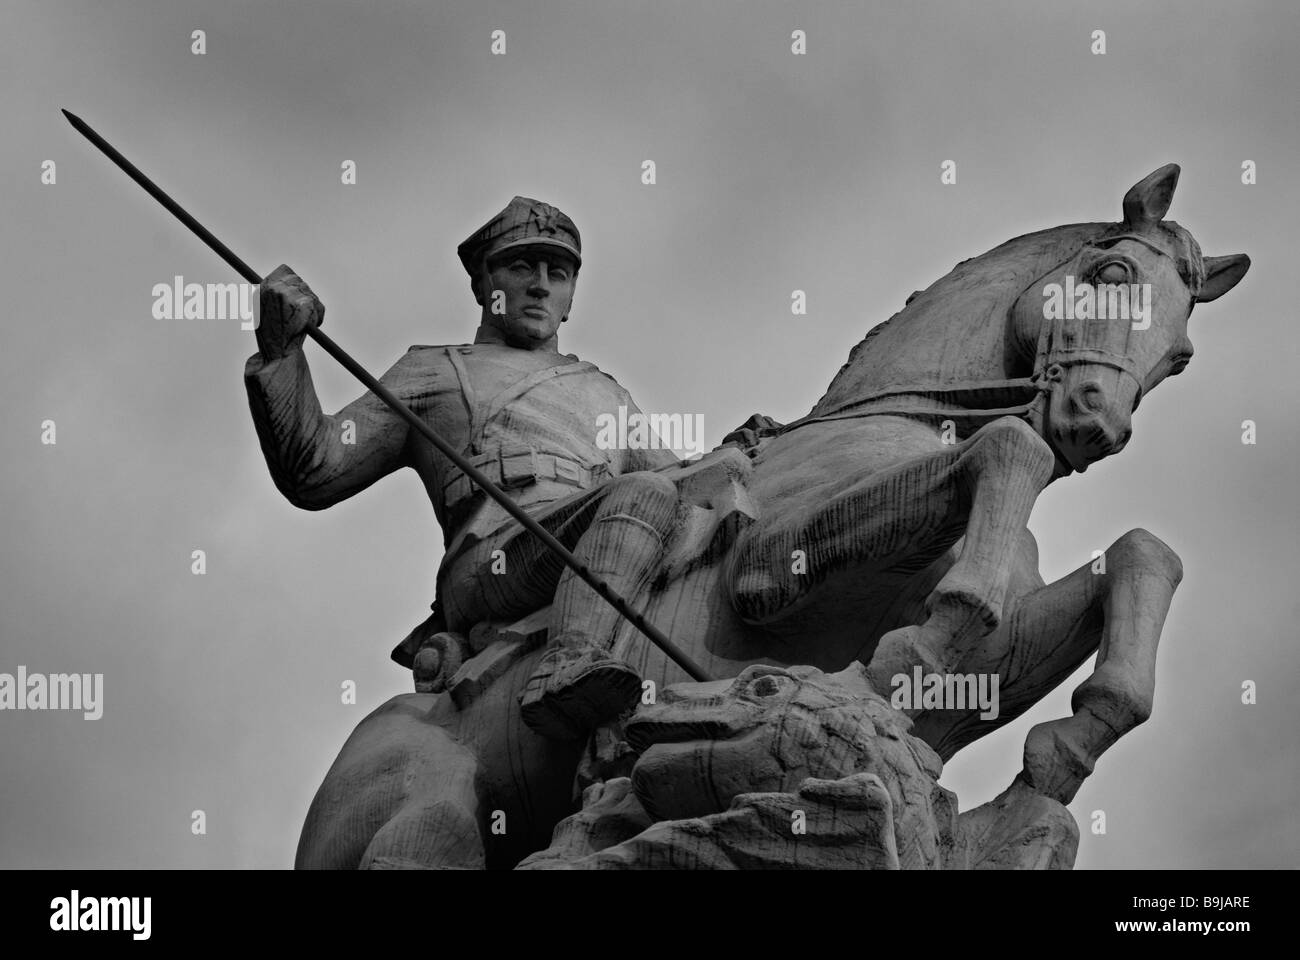 Un monumento estatua de Poznan (caballería Uhlans) muestra un soldado a caballo armado con una lanza, Poznan, Polonia Foto de stock